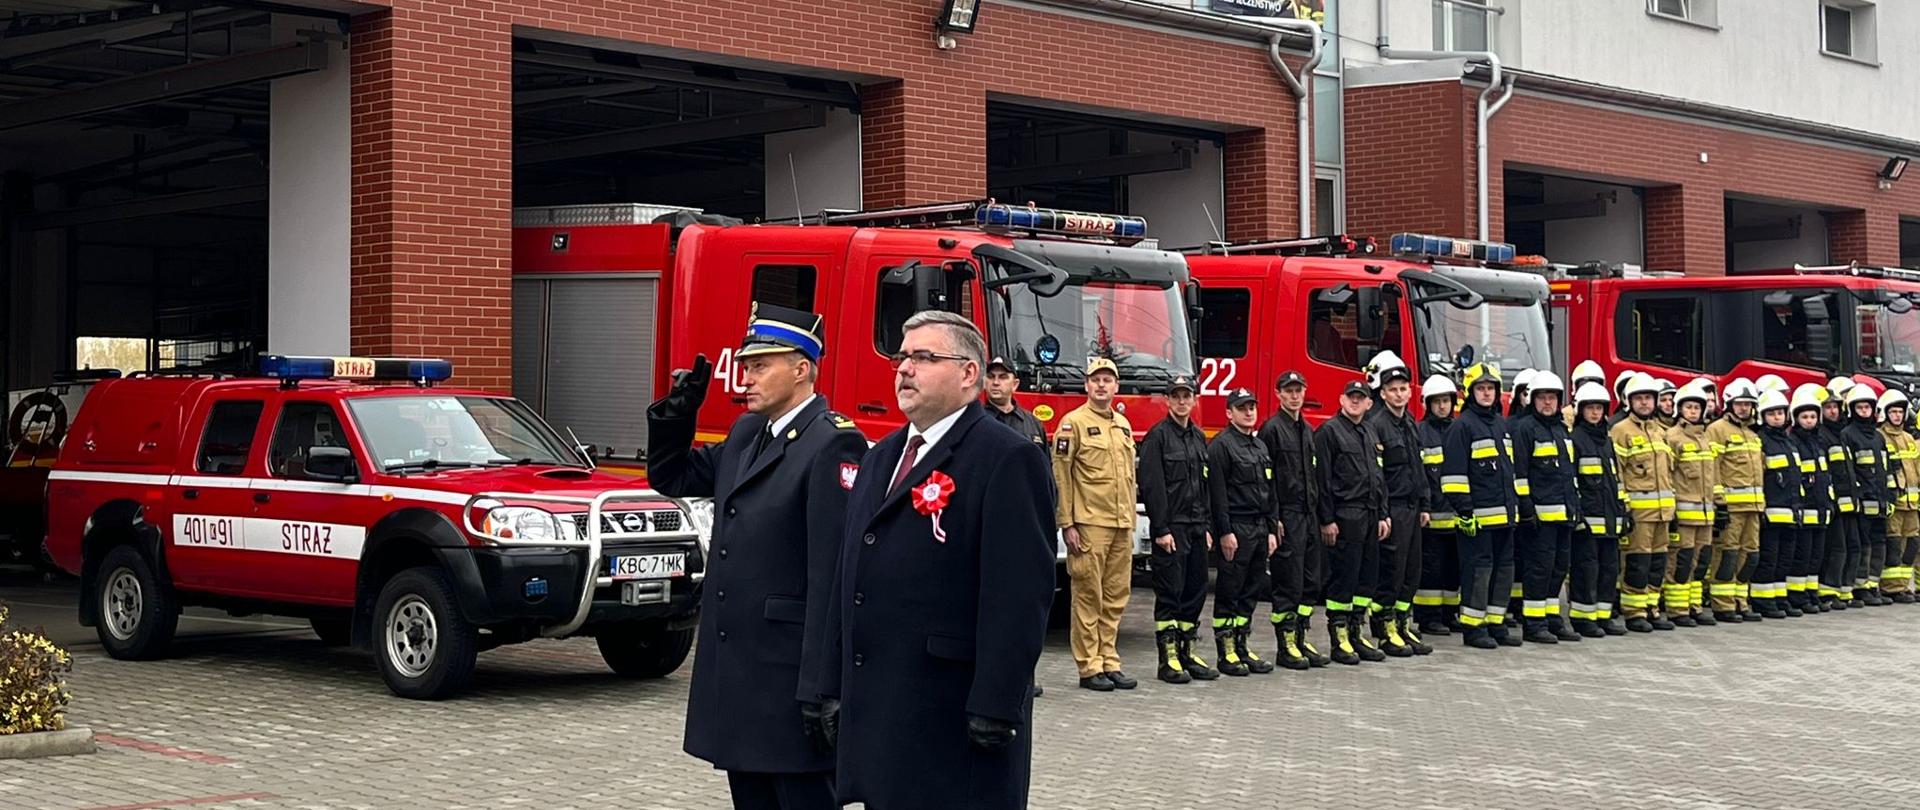 Zdjęcie przedstawia strażaków z Państwowej i Ochotniczej Straży Pożarnej w mundurach wyjściowych, strażaków ubranych ubrania koszarowe, koloru czarnego OSP. W tle znajdują się samochody pożarnicze koloru czerwonego, bramy garażowe i budynek strażnicy